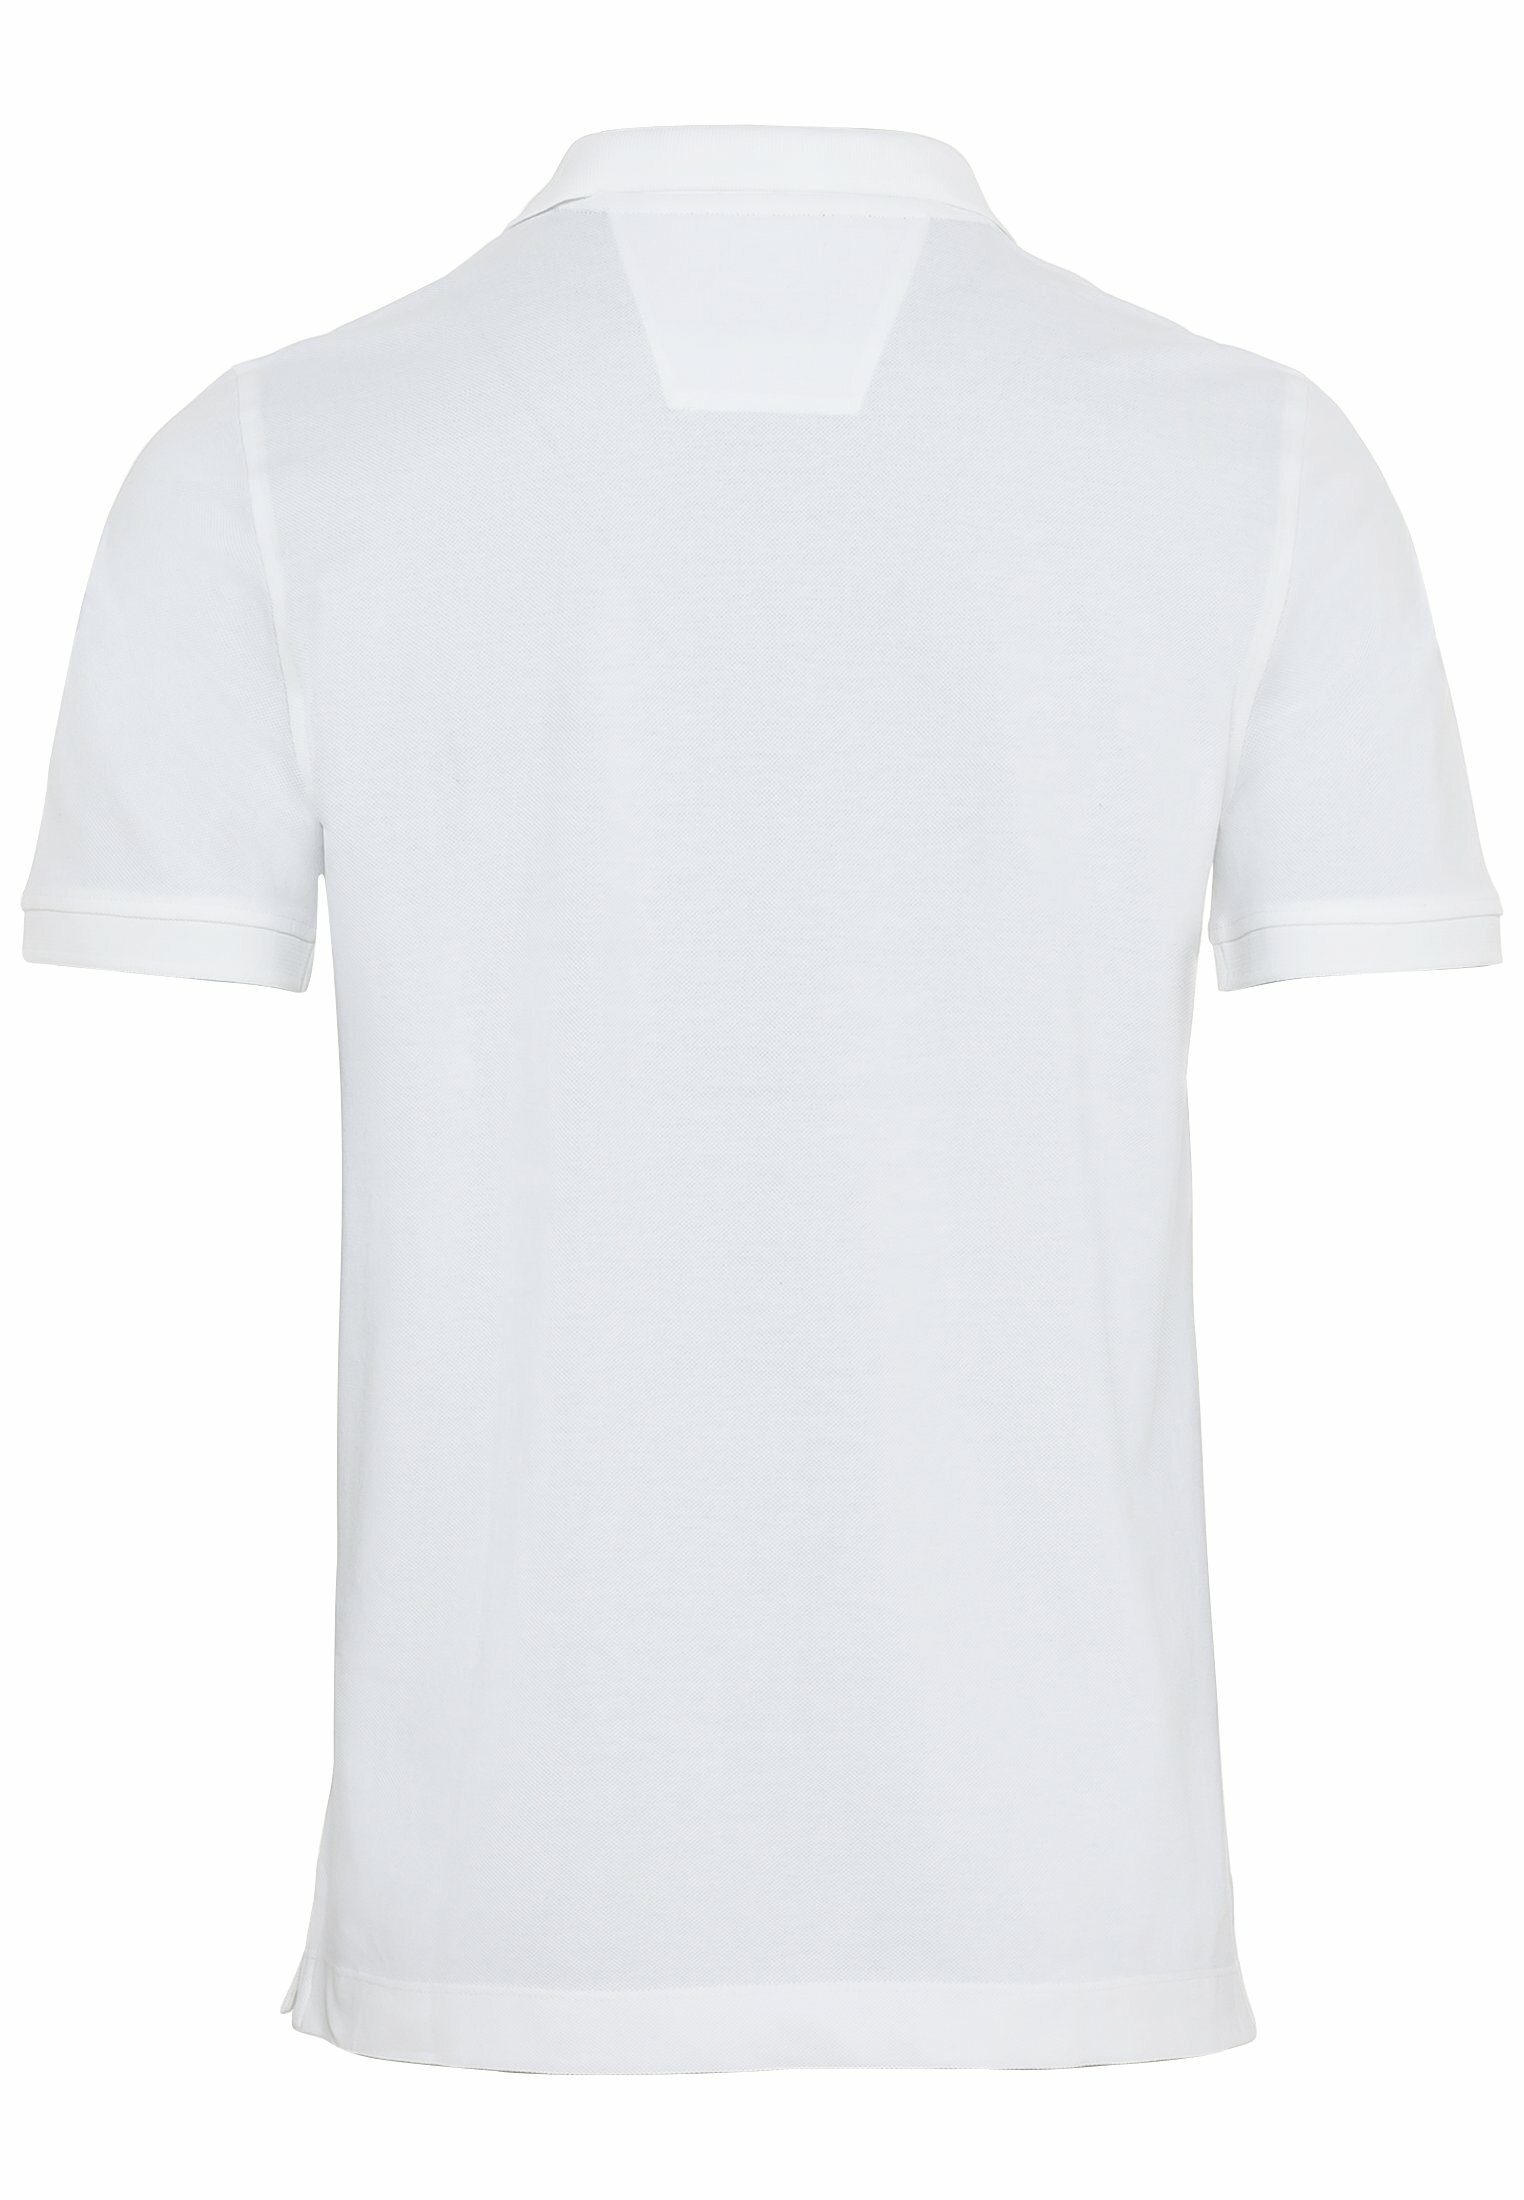 100% Poloshirt Baumwolle camel Shirts_Poloshirt Weiß aus active